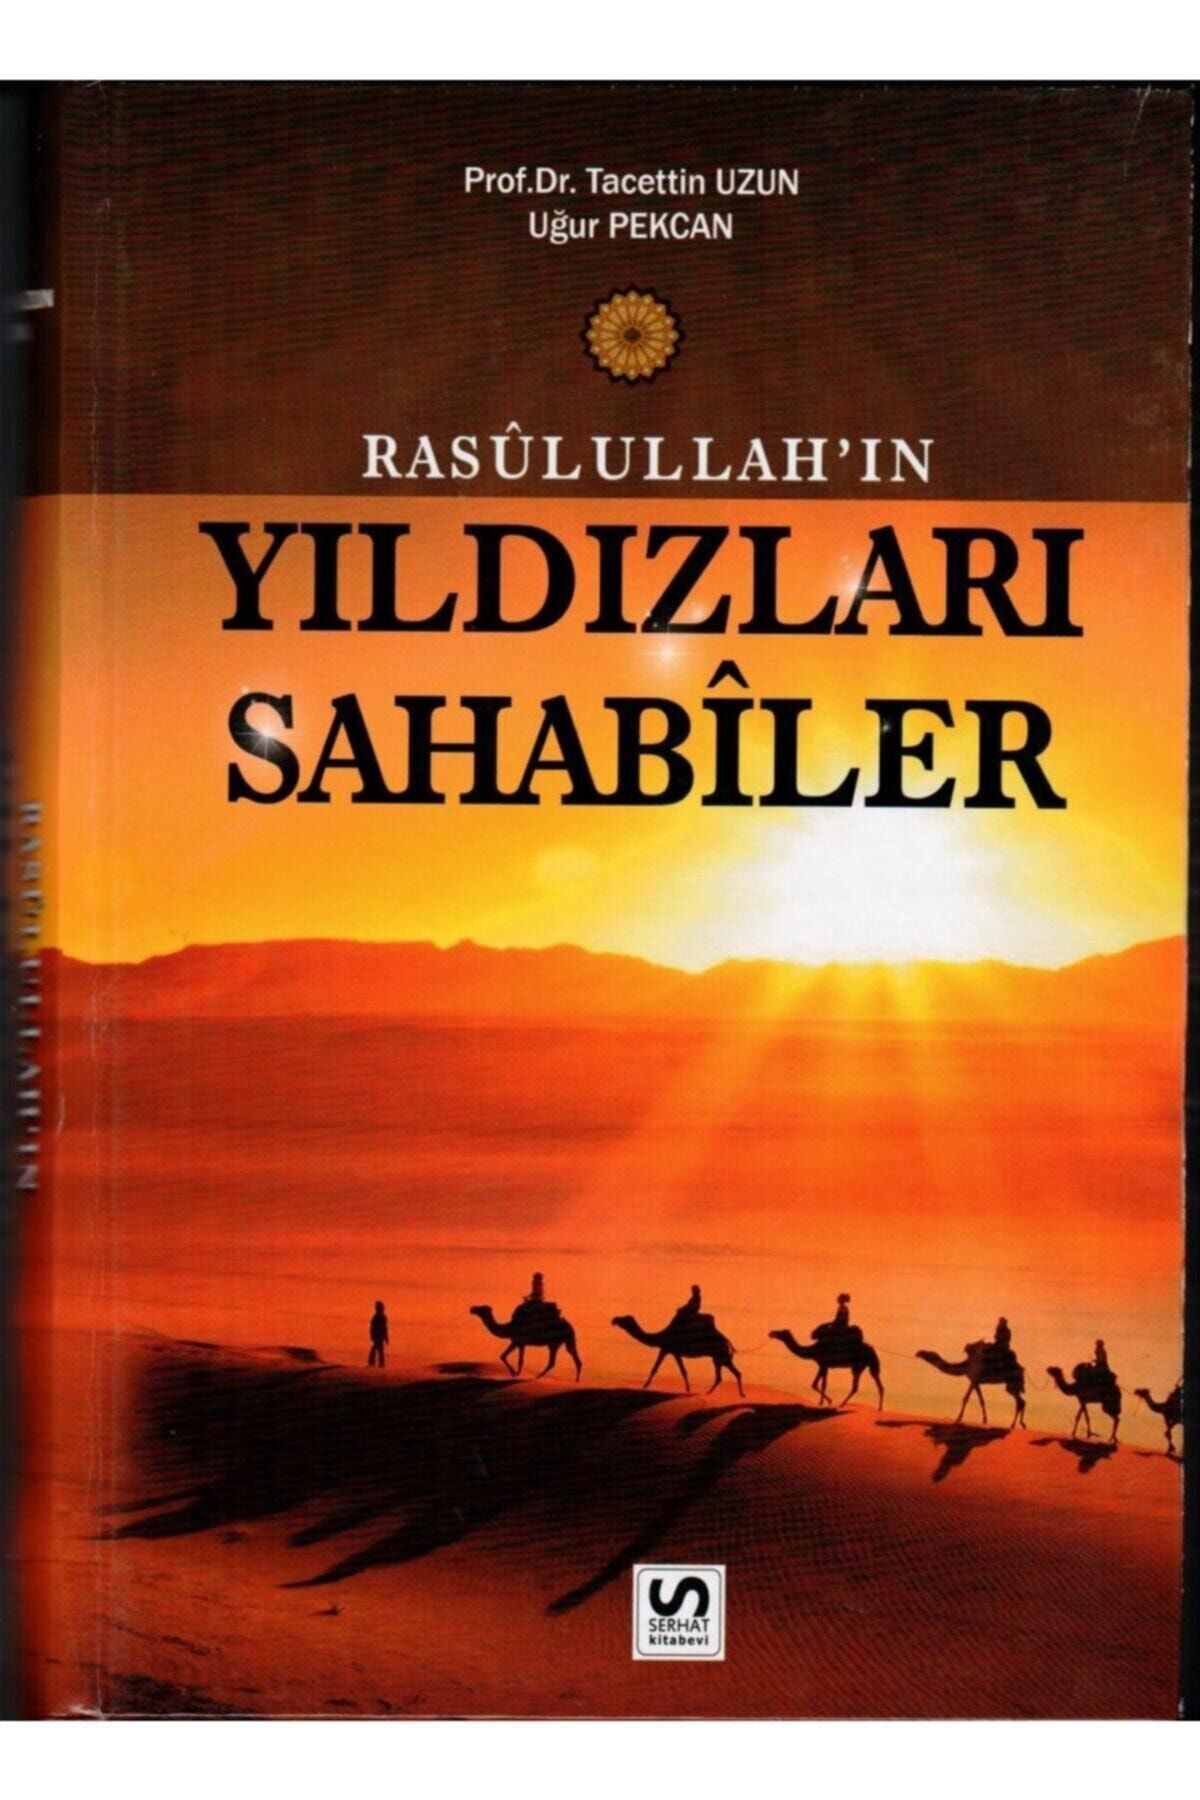 Serhat Kitabevi Rasulullahın Yıldızları Sahabiler, Taceddin Uzun/uğur Pekcan, 17x24 Ciltli, Serhat